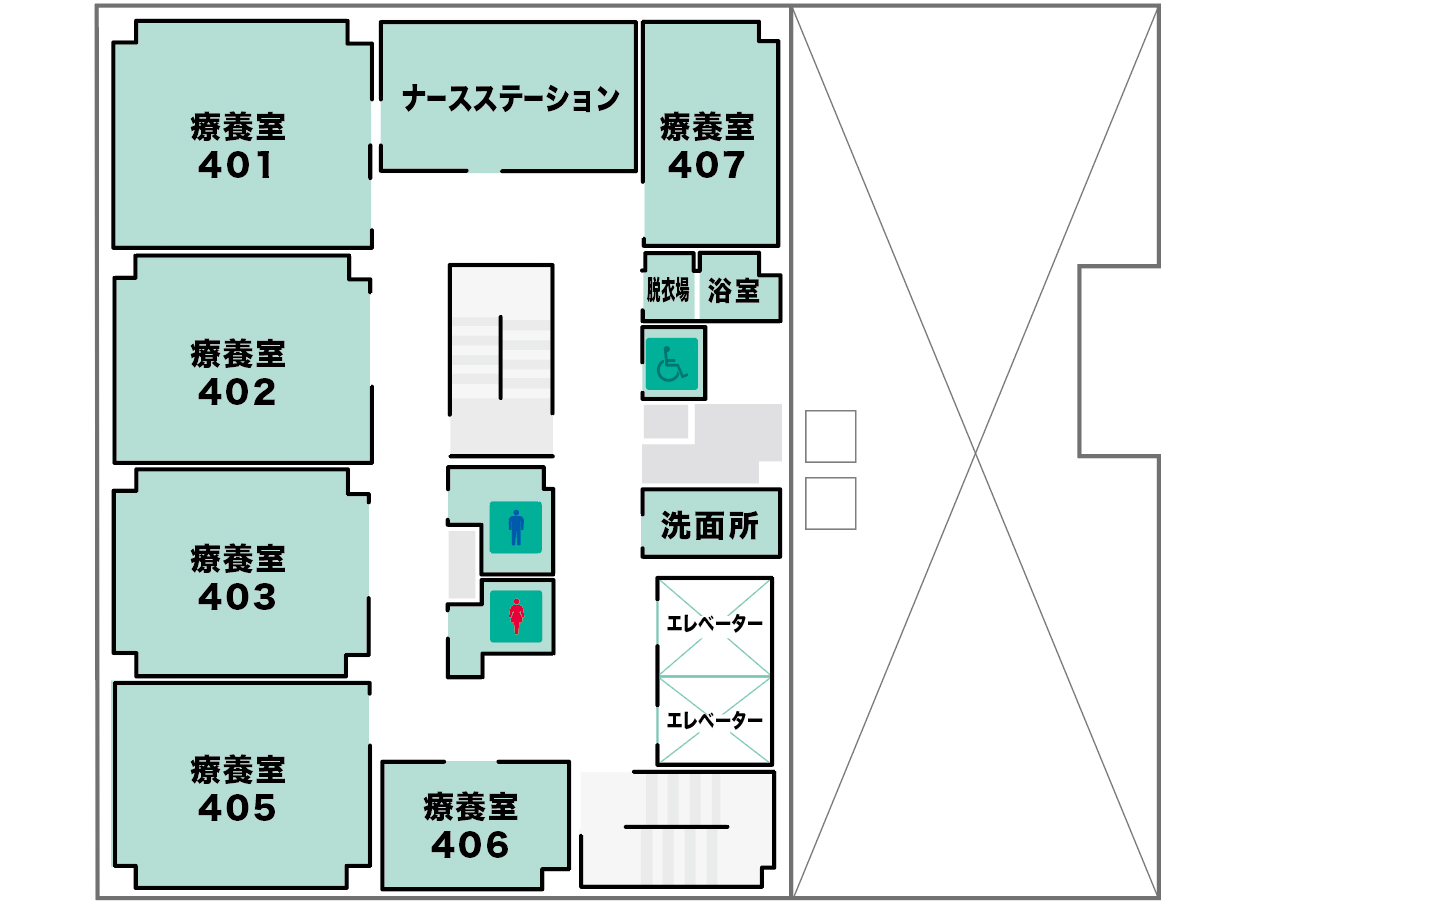 4F Floor Map